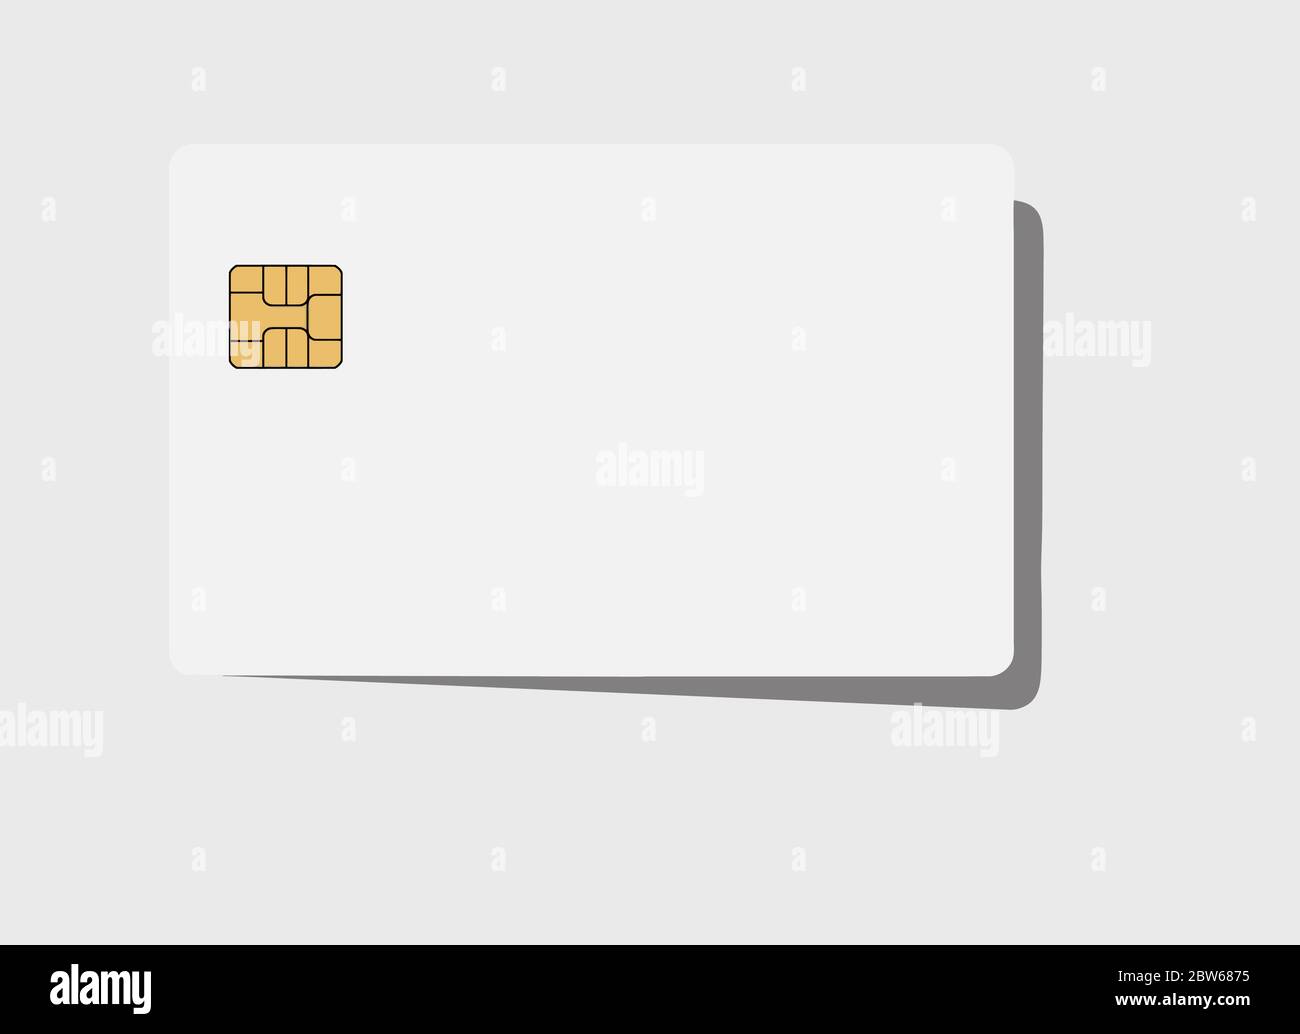 Ecco una carta di credito o debito bianca vuota con un chip EMV dorato.  Area di testo. Area di copia. La scheda proietta un'ombra su uno sfondo  grigio chiaro Immagine e Vettoriale -